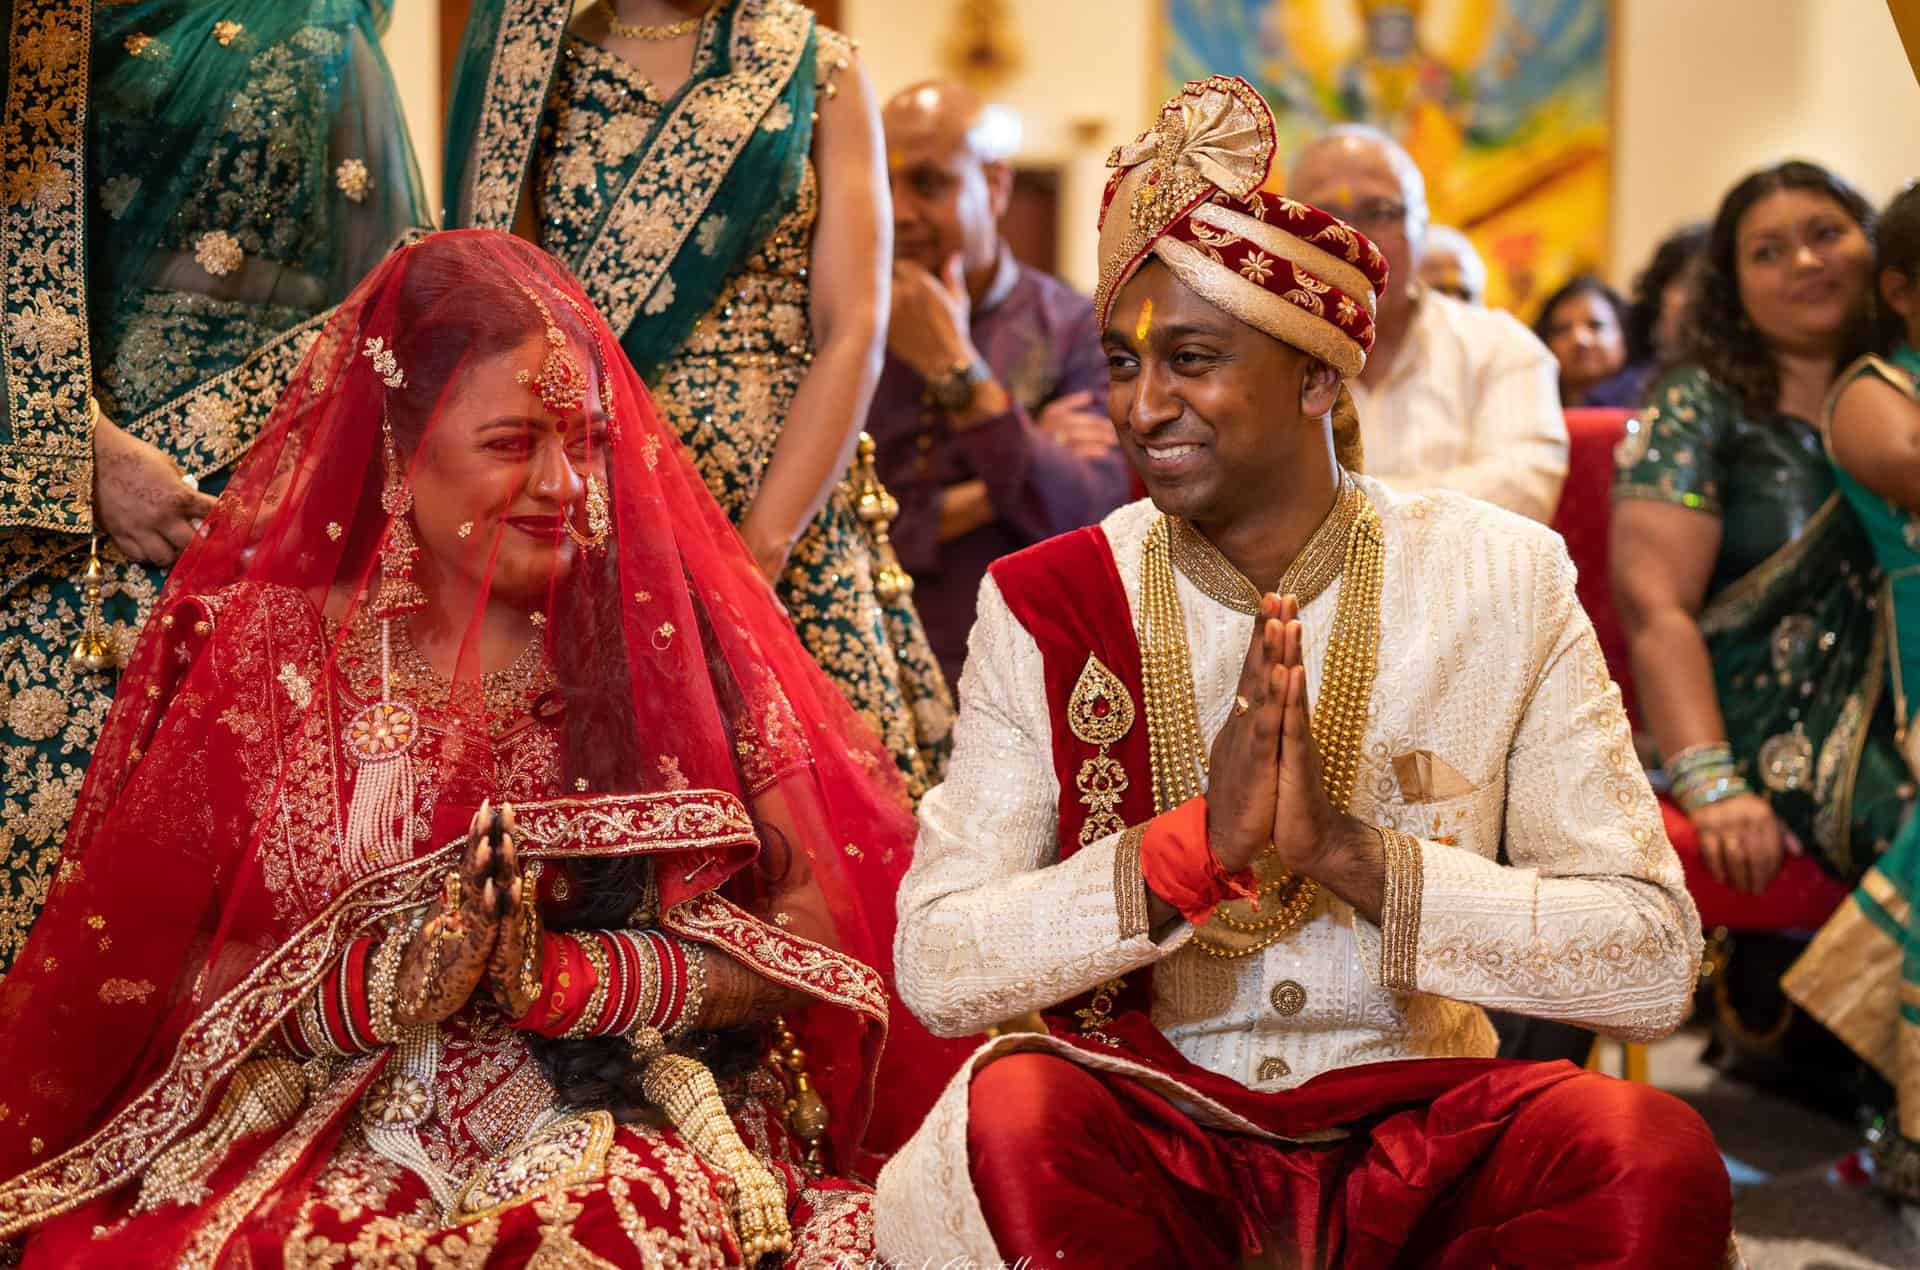 De rituelen en ceremonies bij Hindoestaanse bruiloften